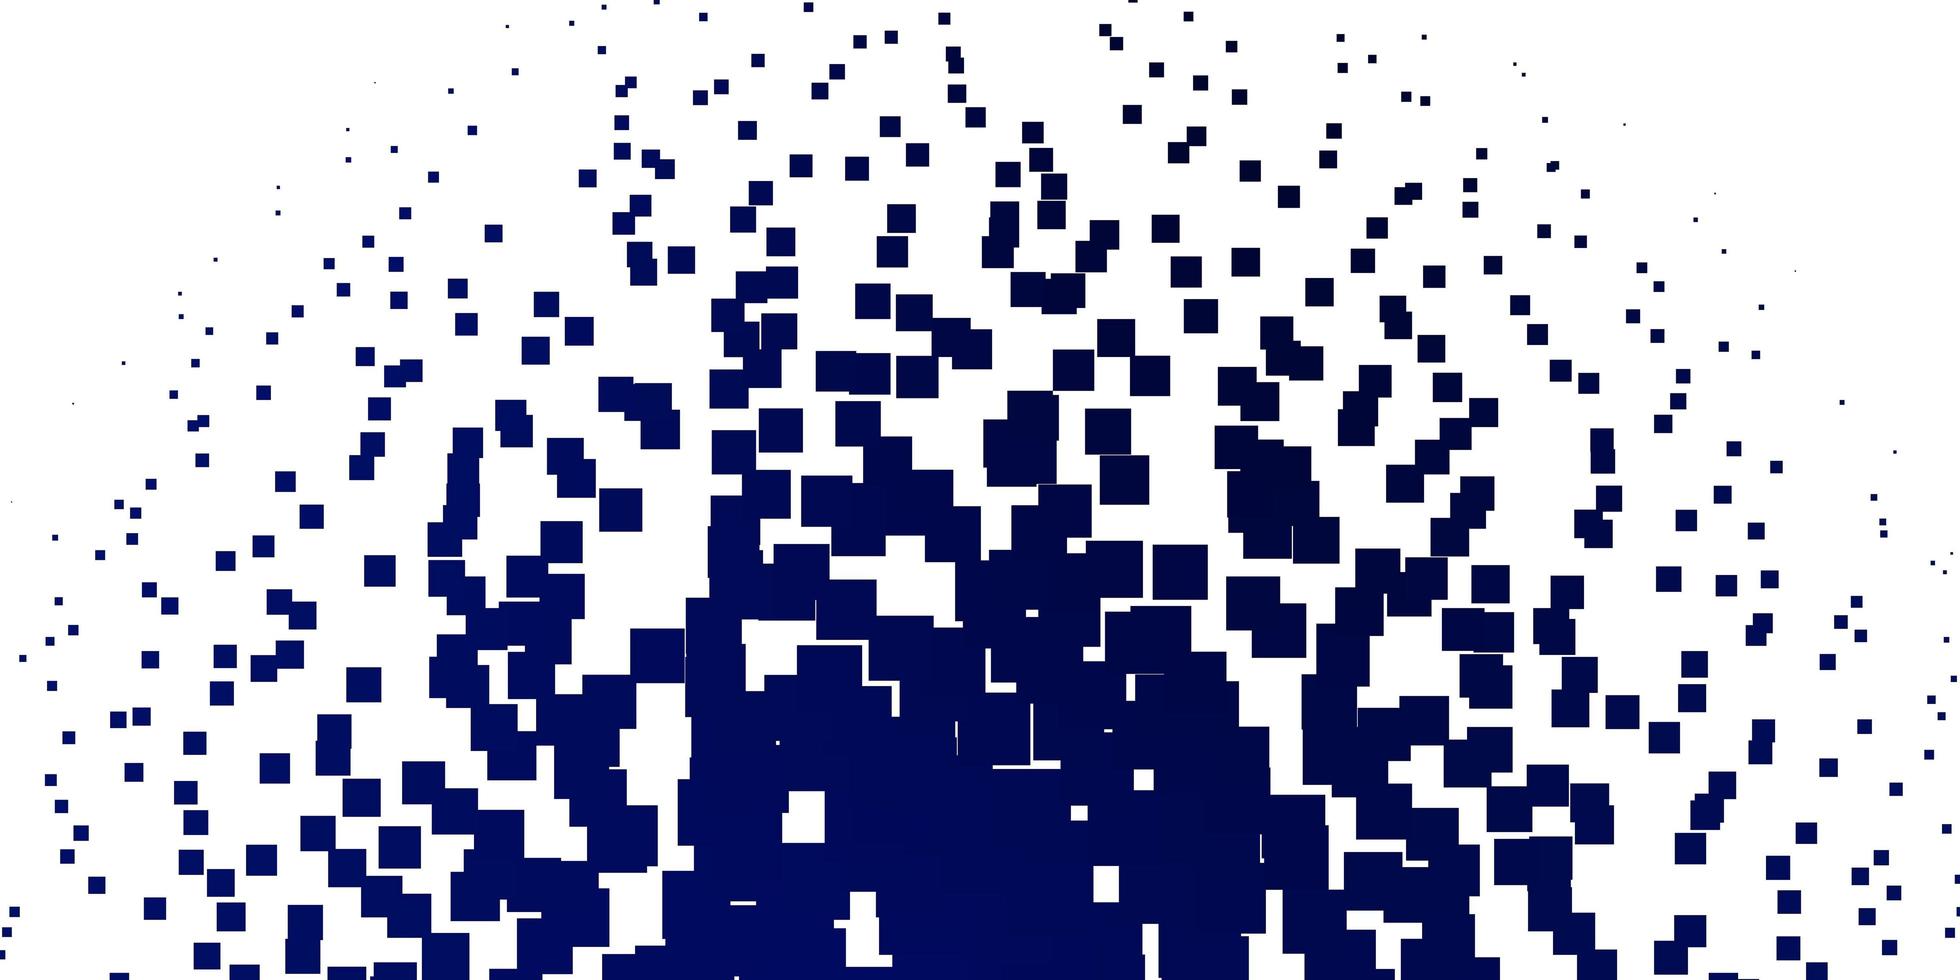 fond de vecteur bleu clair dans une illustration colorée de style polygonal avec des rectangles et des carrés dégradés pour les pages de destination des sites Web